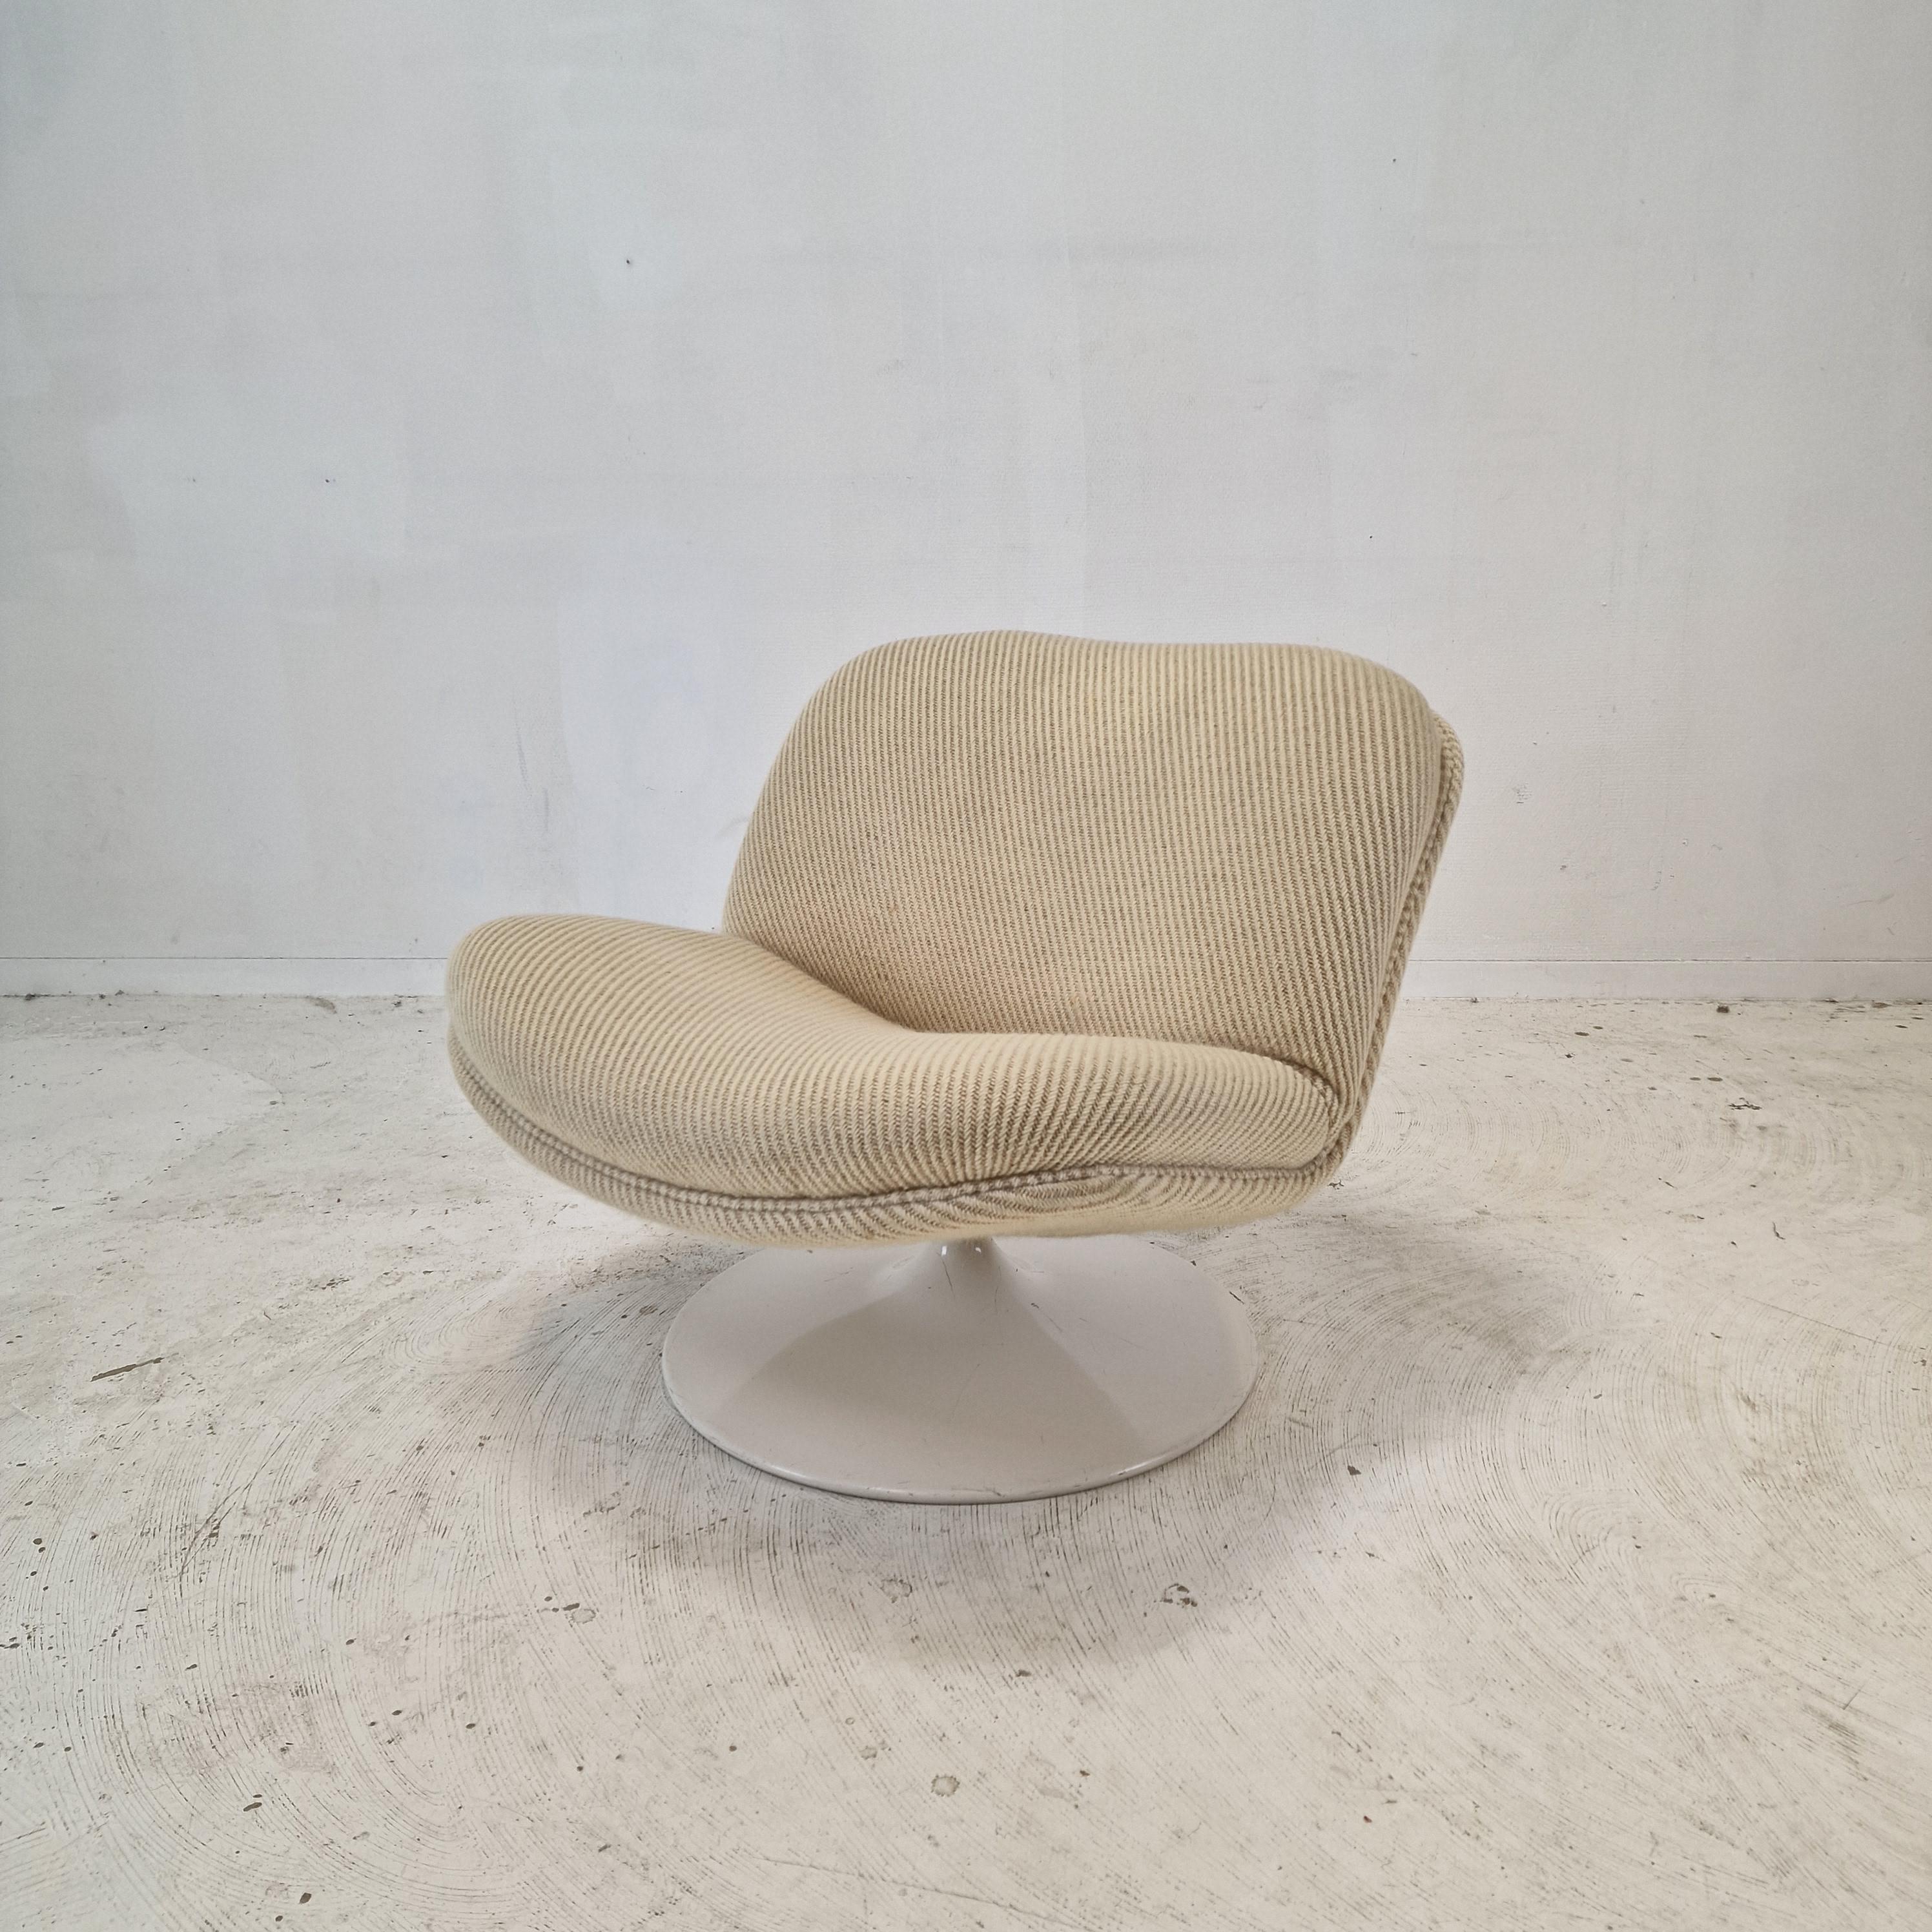 Chaise longue 508 très mignonne et confortable conçue par le célèbre Geoffrey Harcourt pour Artifort dans les années 70.

Cadre en bois très solide avec un grand pied métallique pivotant.  
La chaise est en tissu de laine de haute qualité, de